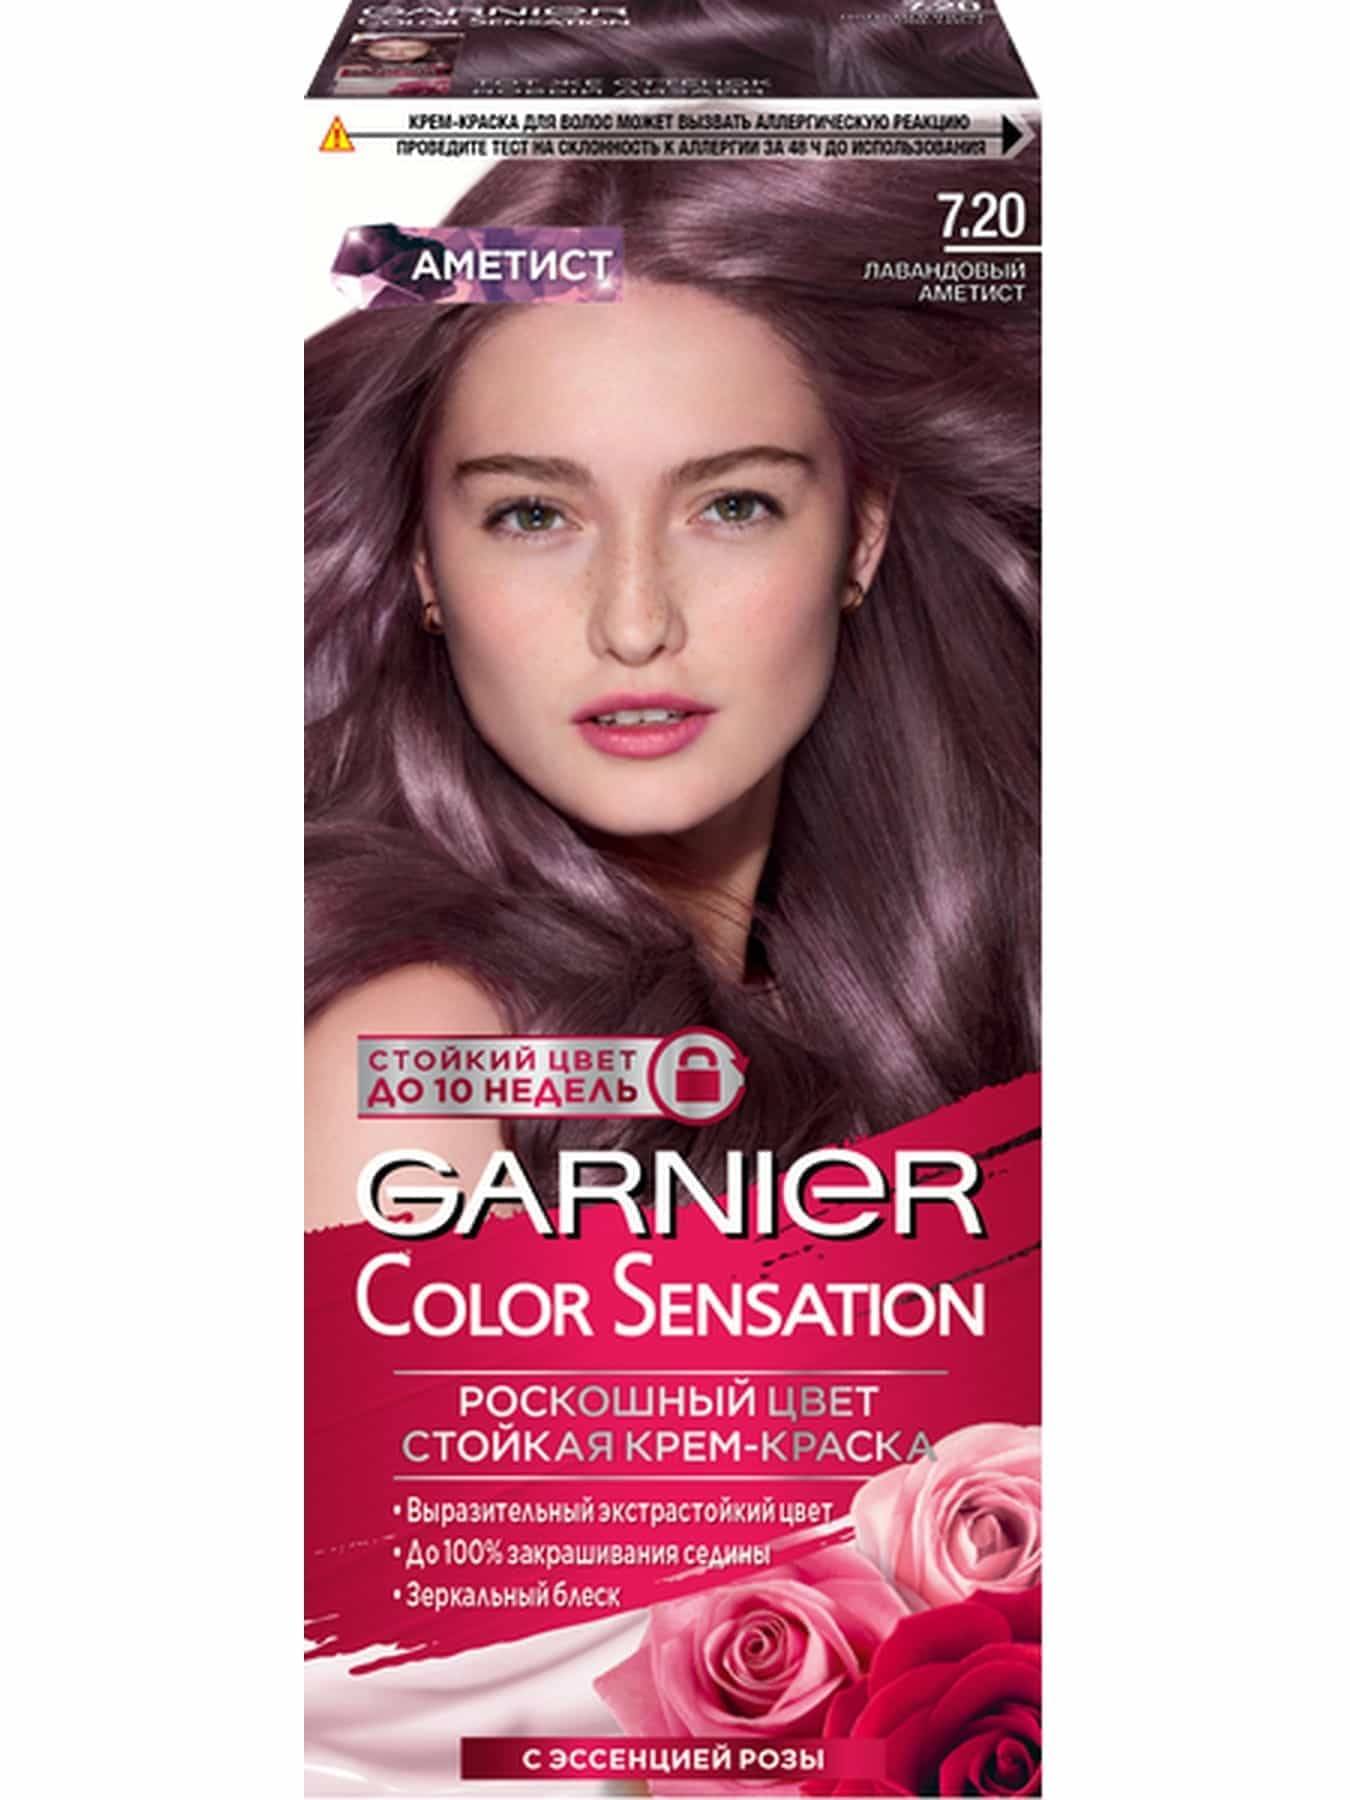 Garnier Color Sensation, 7.20